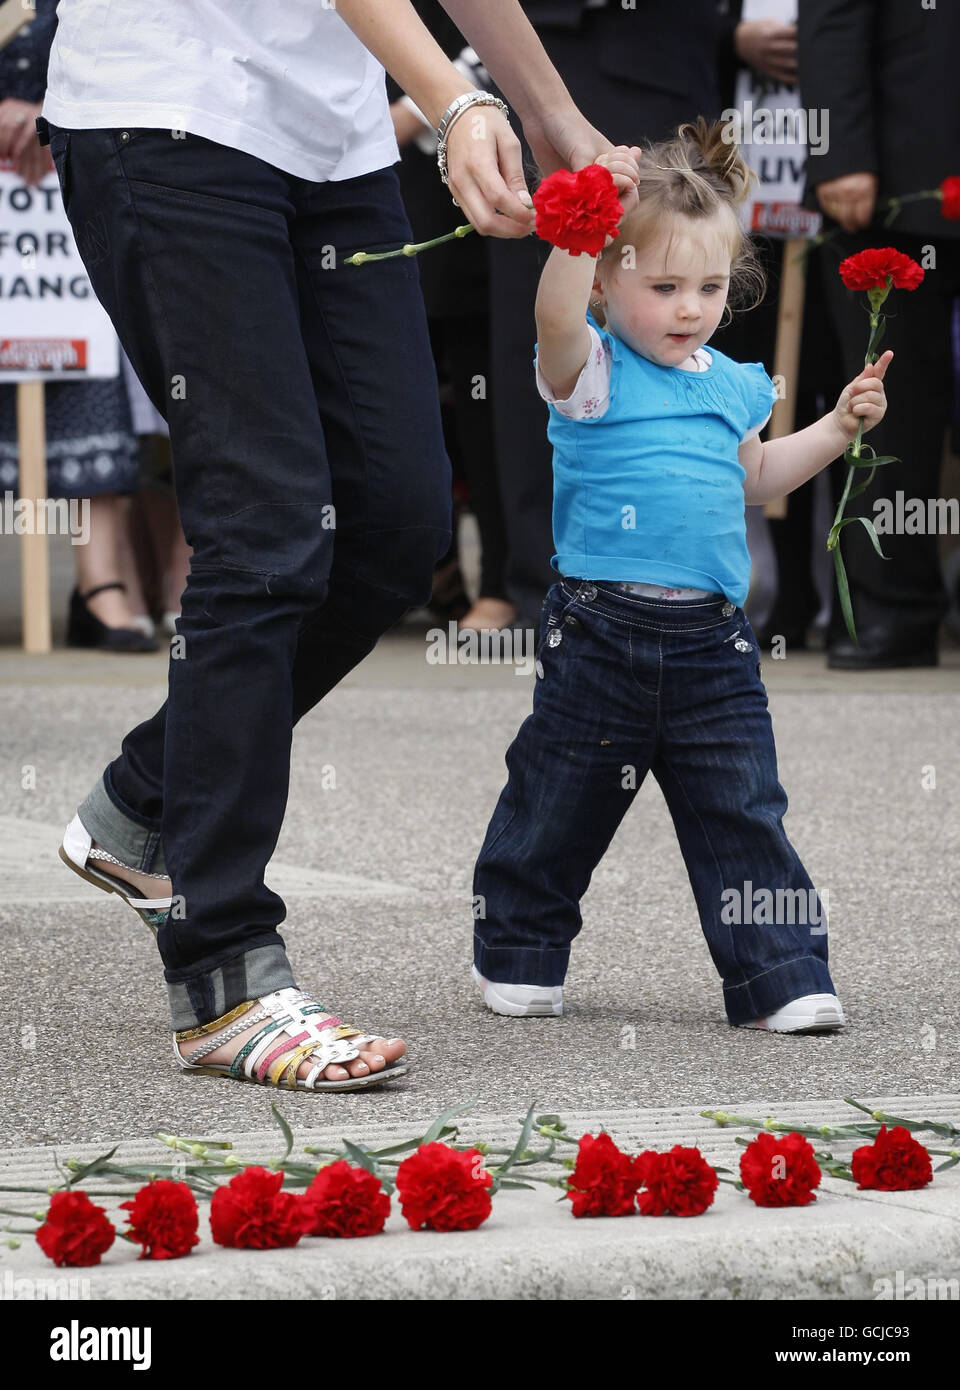 Un jeune enfant dépose une caricature rouge devant le Parlement écossais lors d’une manifestation organisée par des militants demandant des peines de prison obligatoires pour crimes commis par des couteaux. Banque D'Images